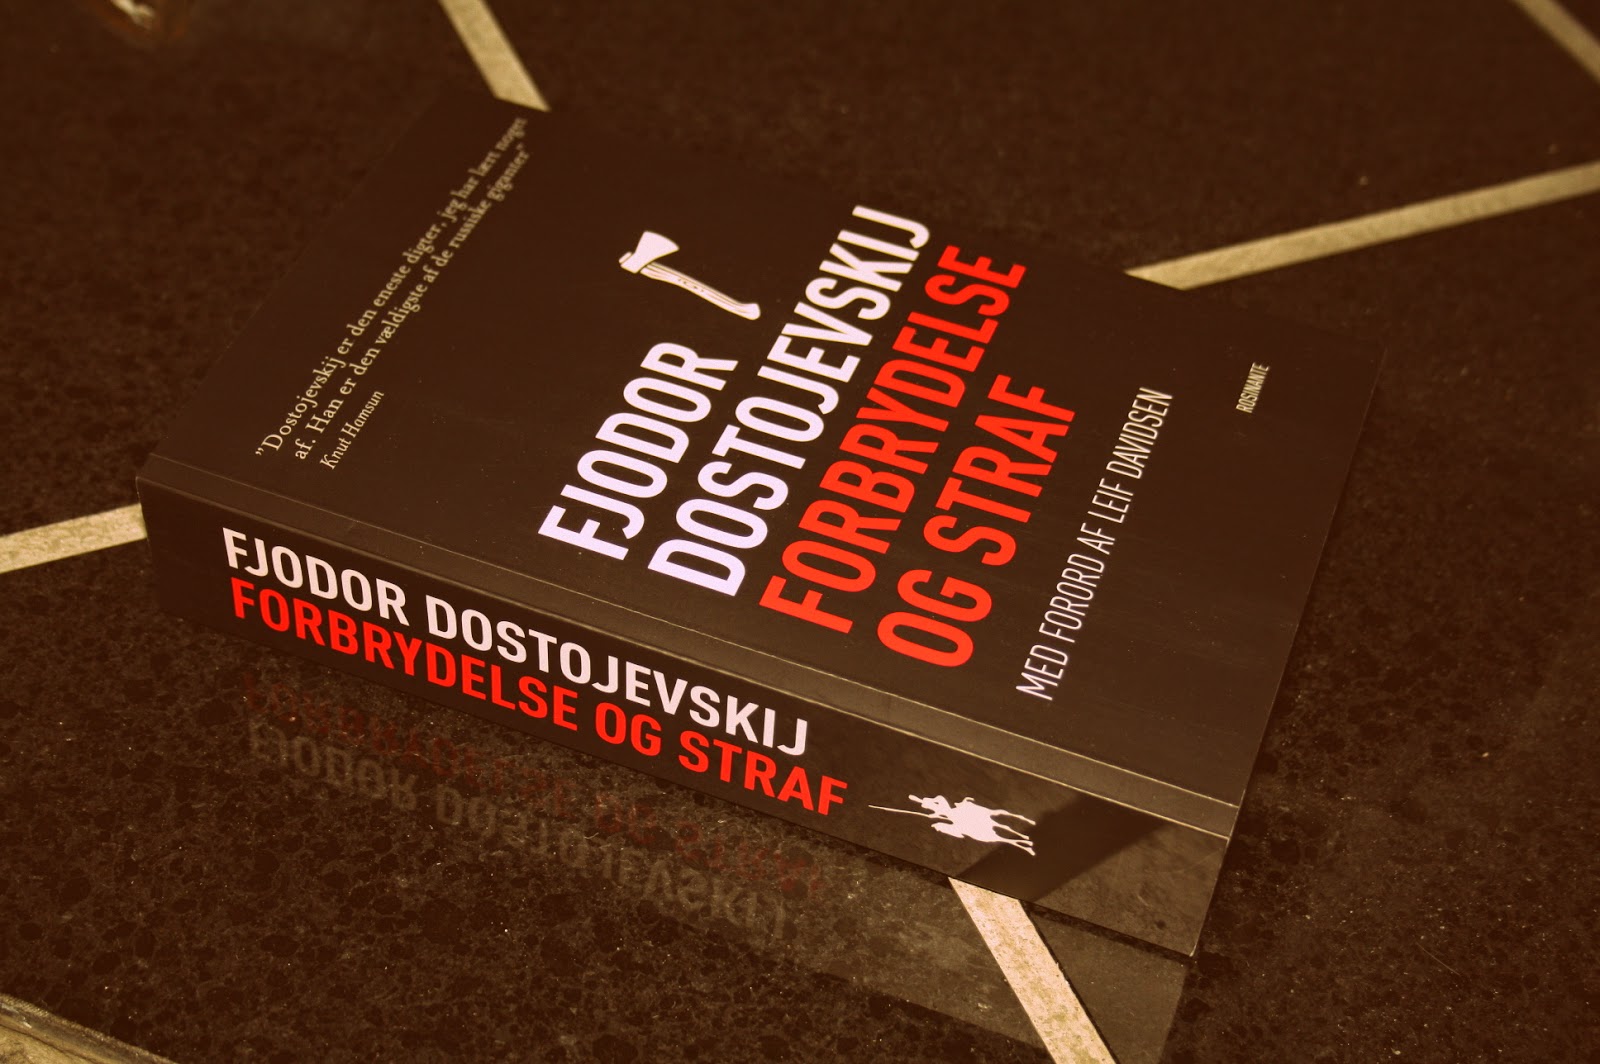 Forbrydelse og straf af Fjodor Dostojevskij